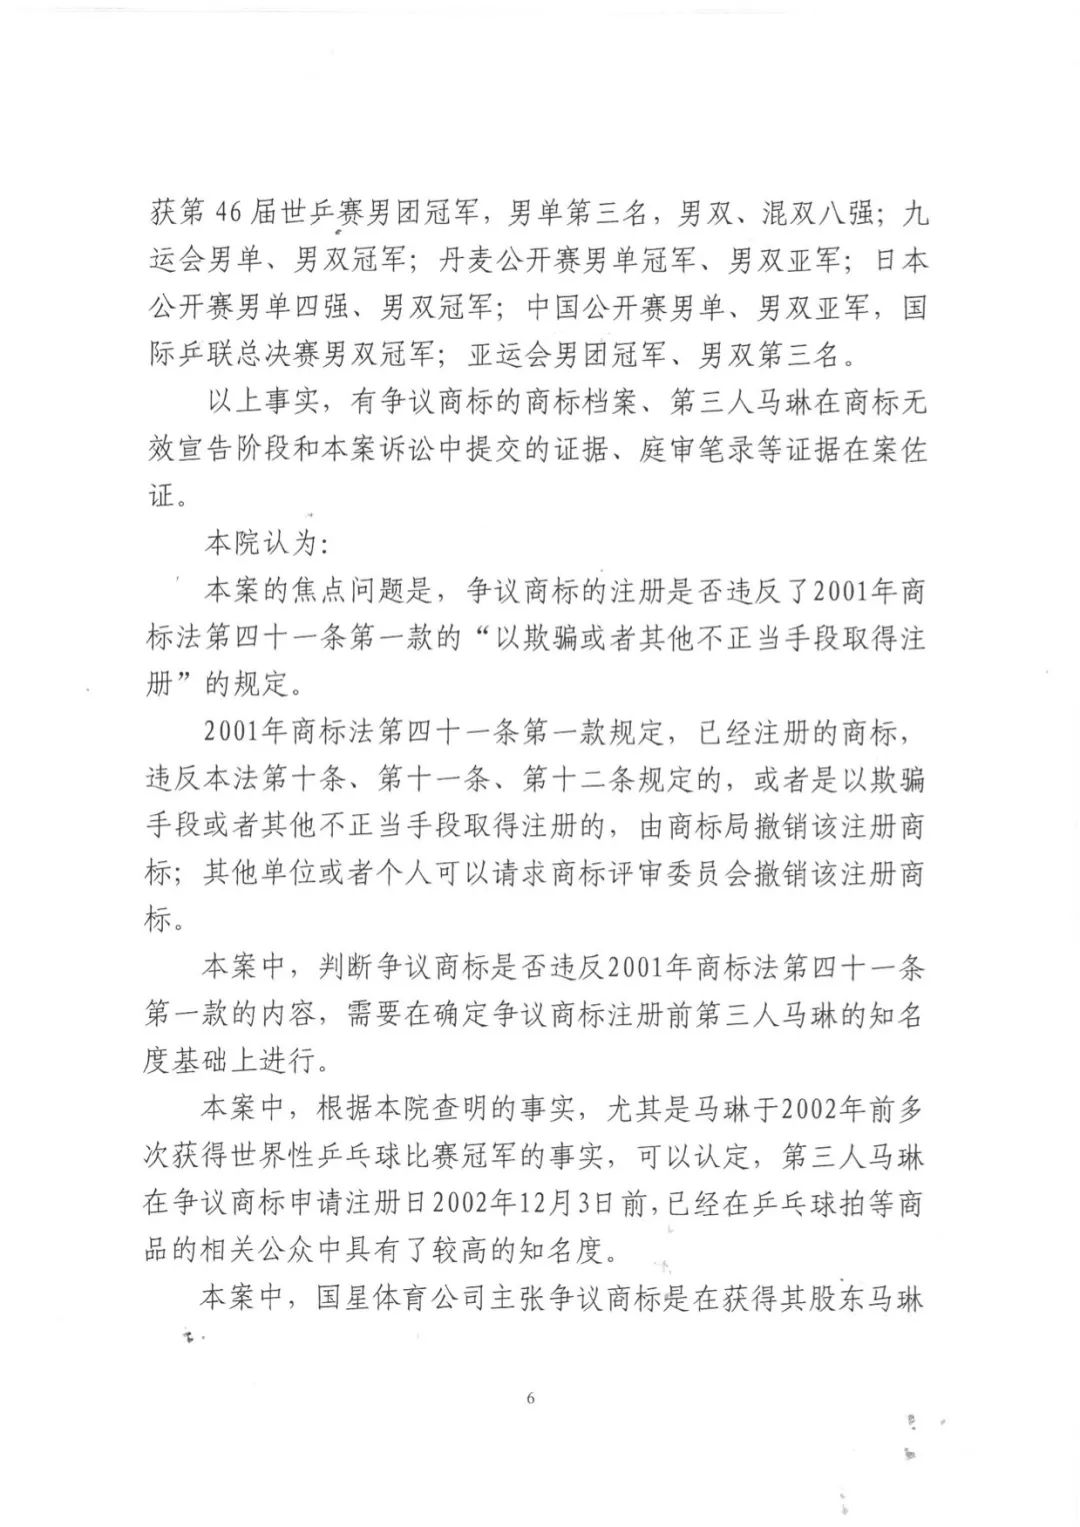 北京奥运会乒乓球男单冠军“马琳”商标无效维持案分析